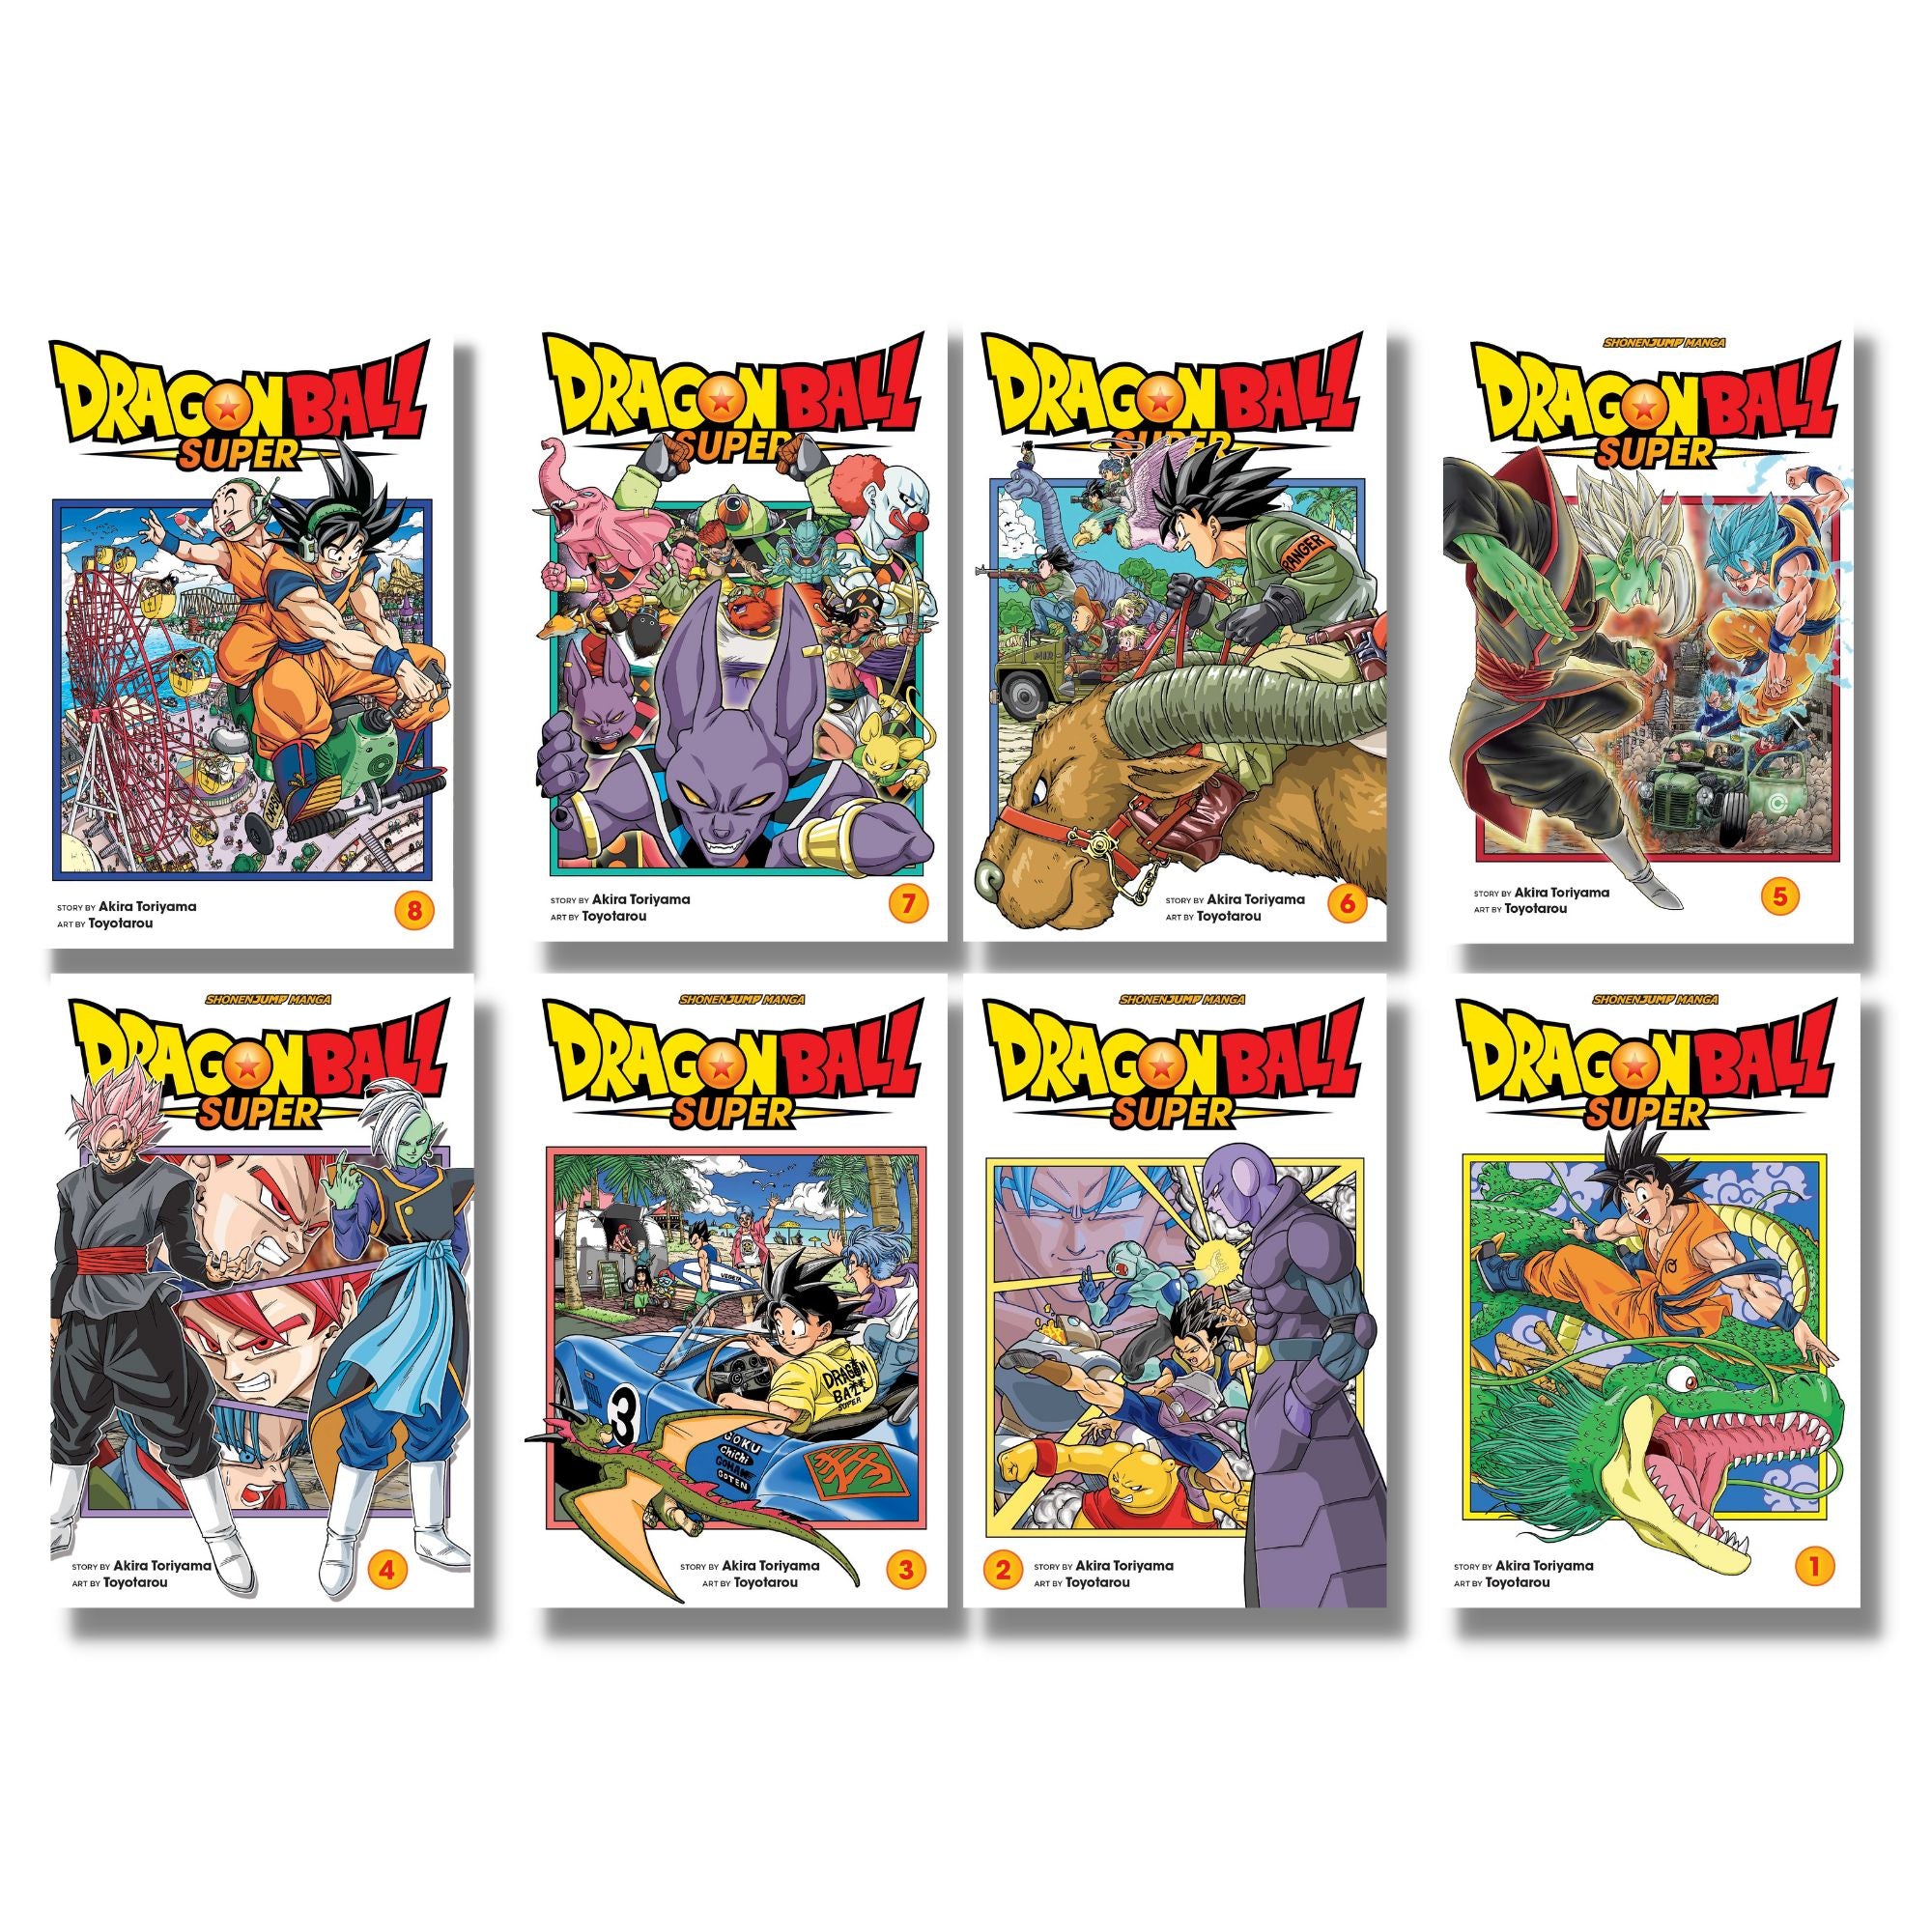 Dragon Ball Super Vol. 1-18 Set English Manga - With Action Figure